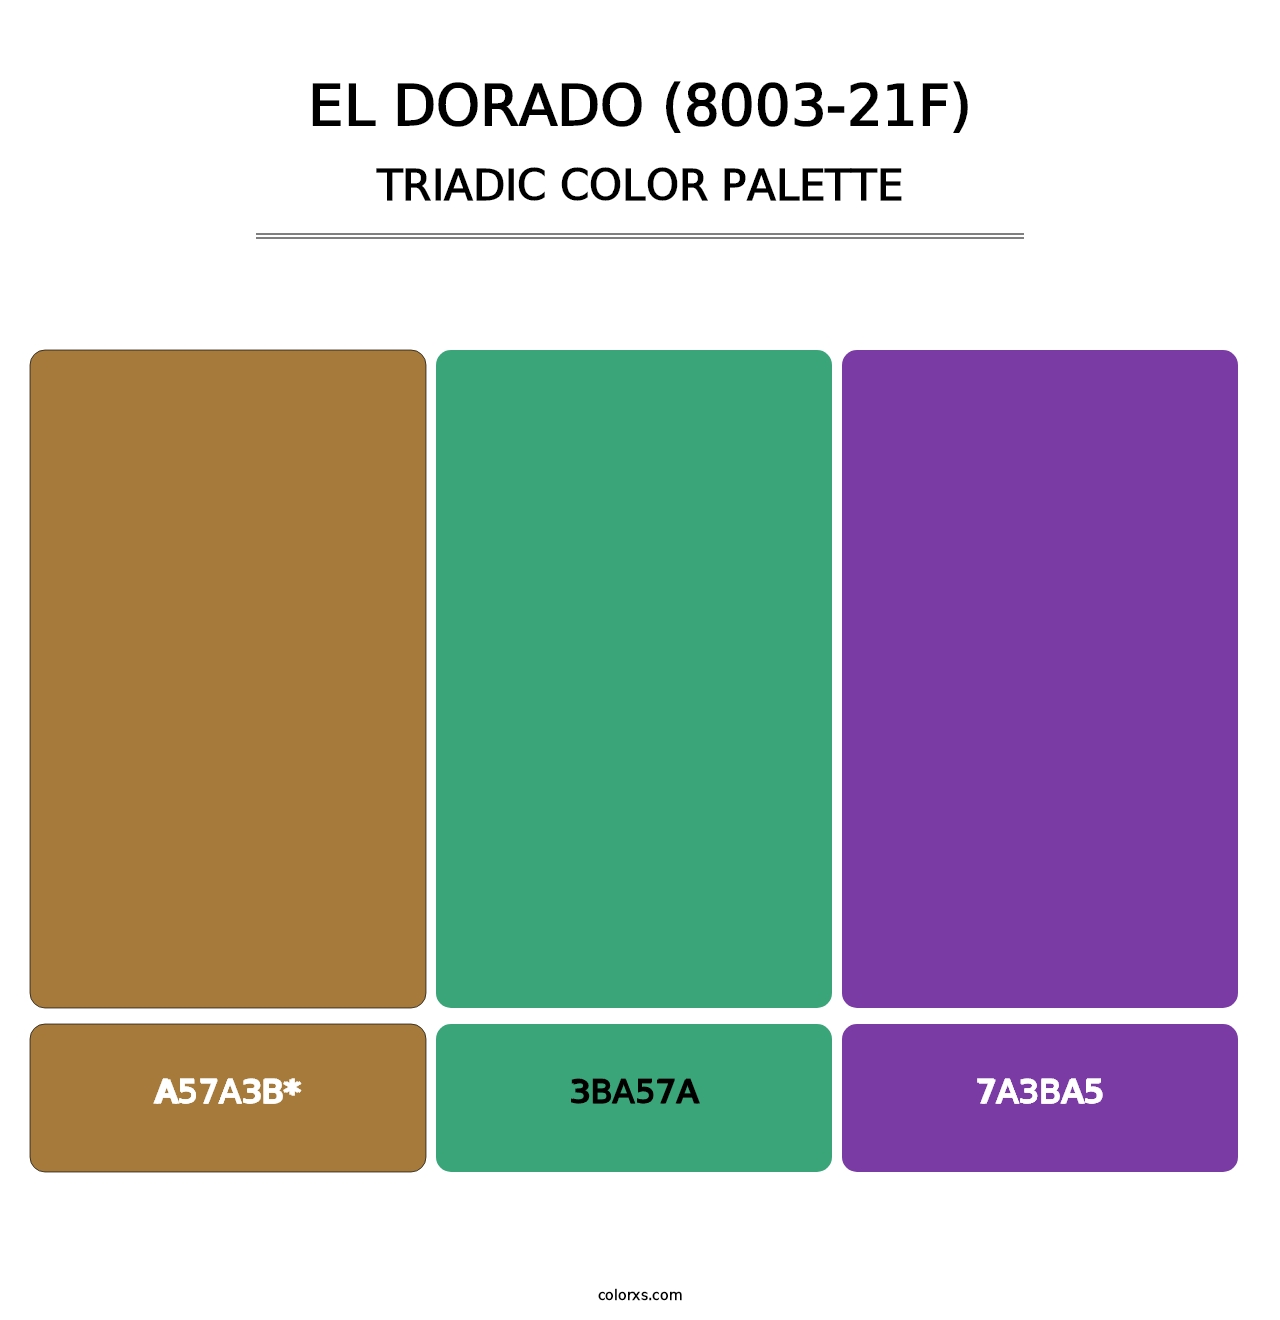 El Dorado (8003-21F) - Triadic Color Palette